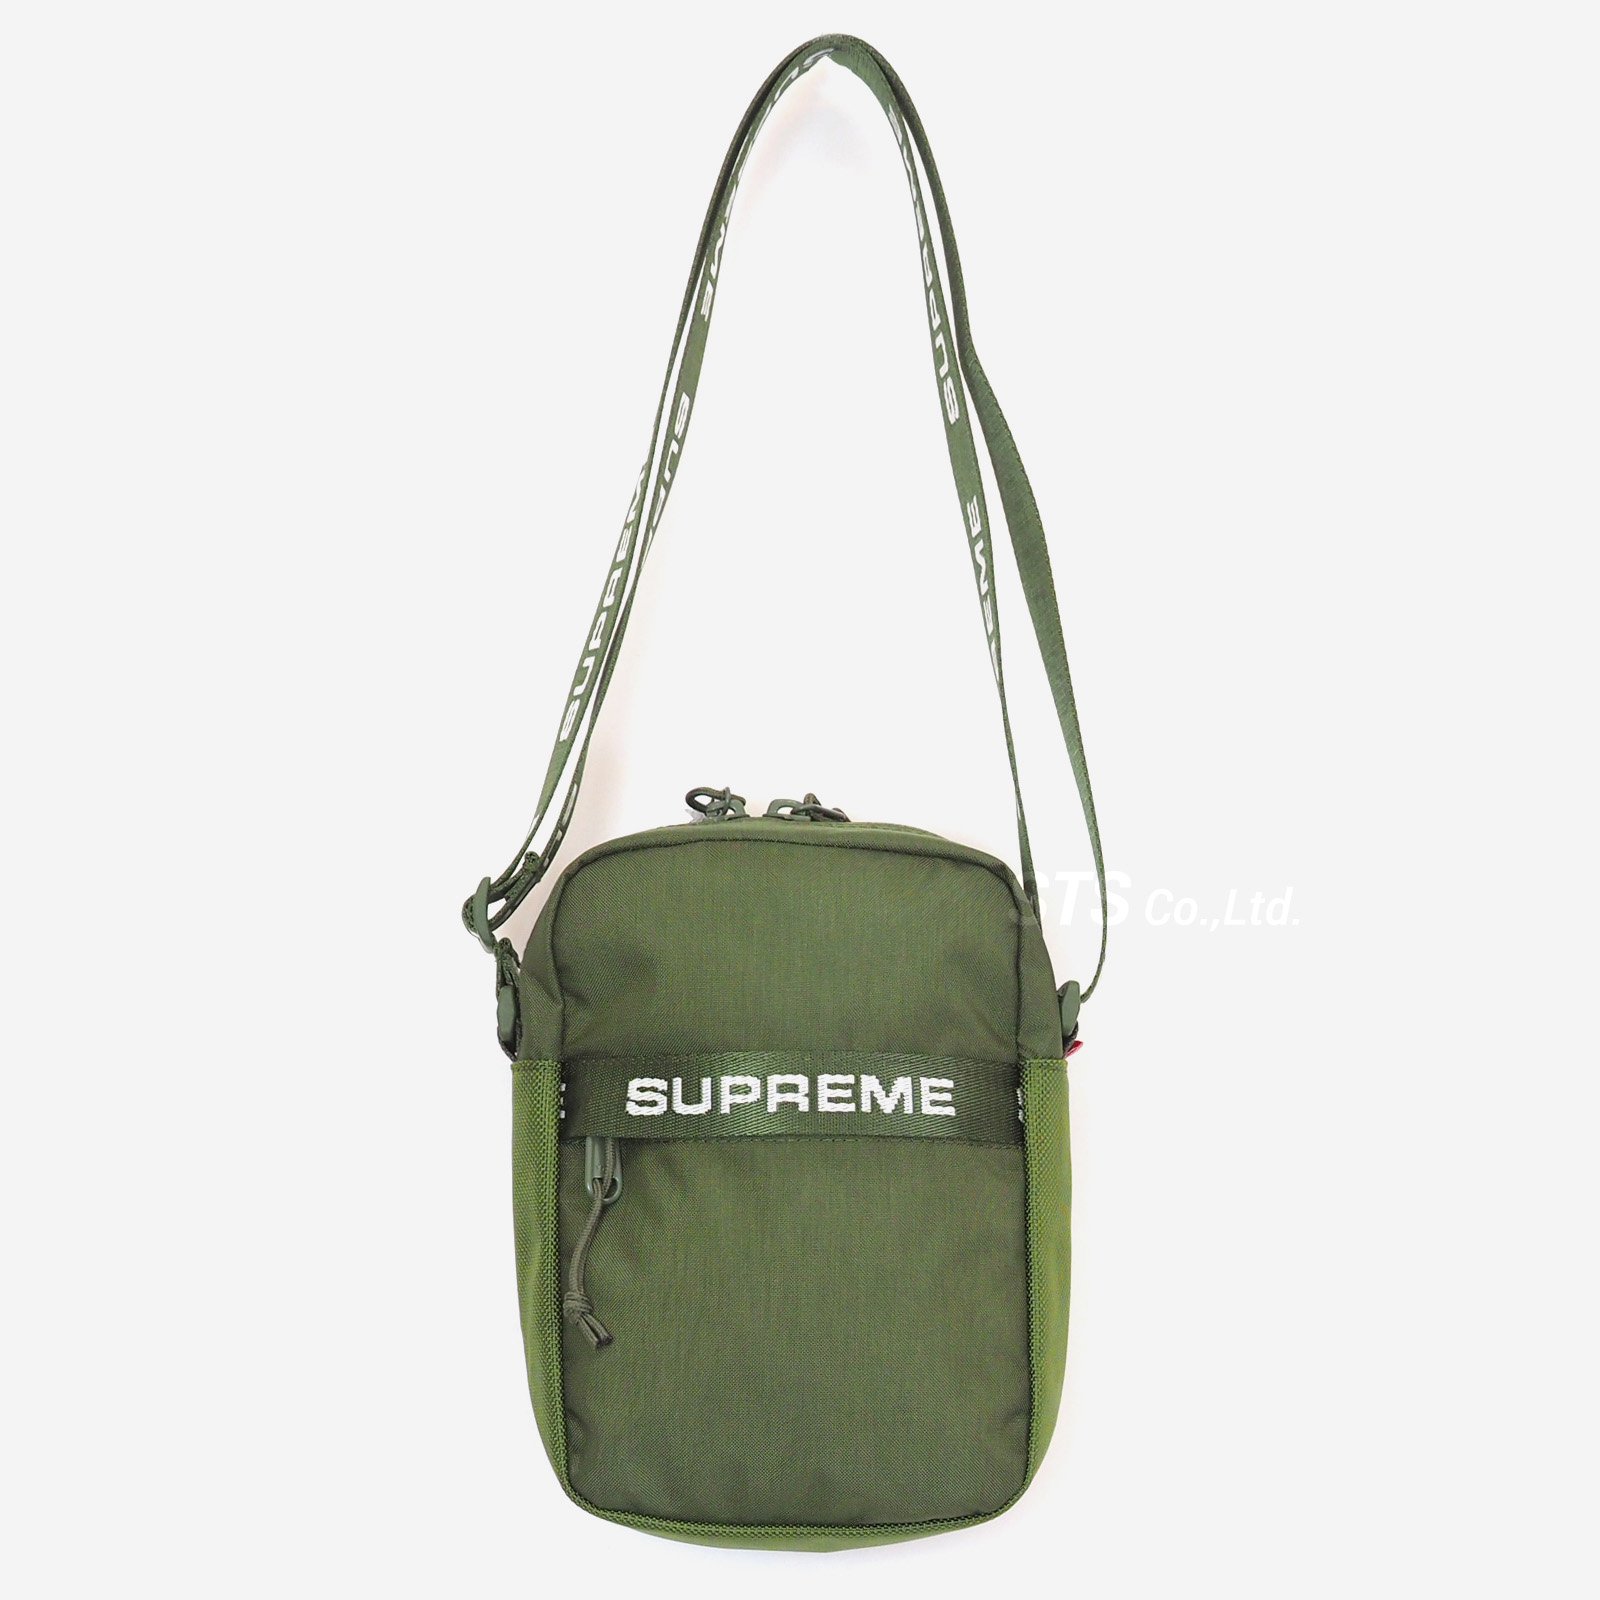 Supreme shoulderbag